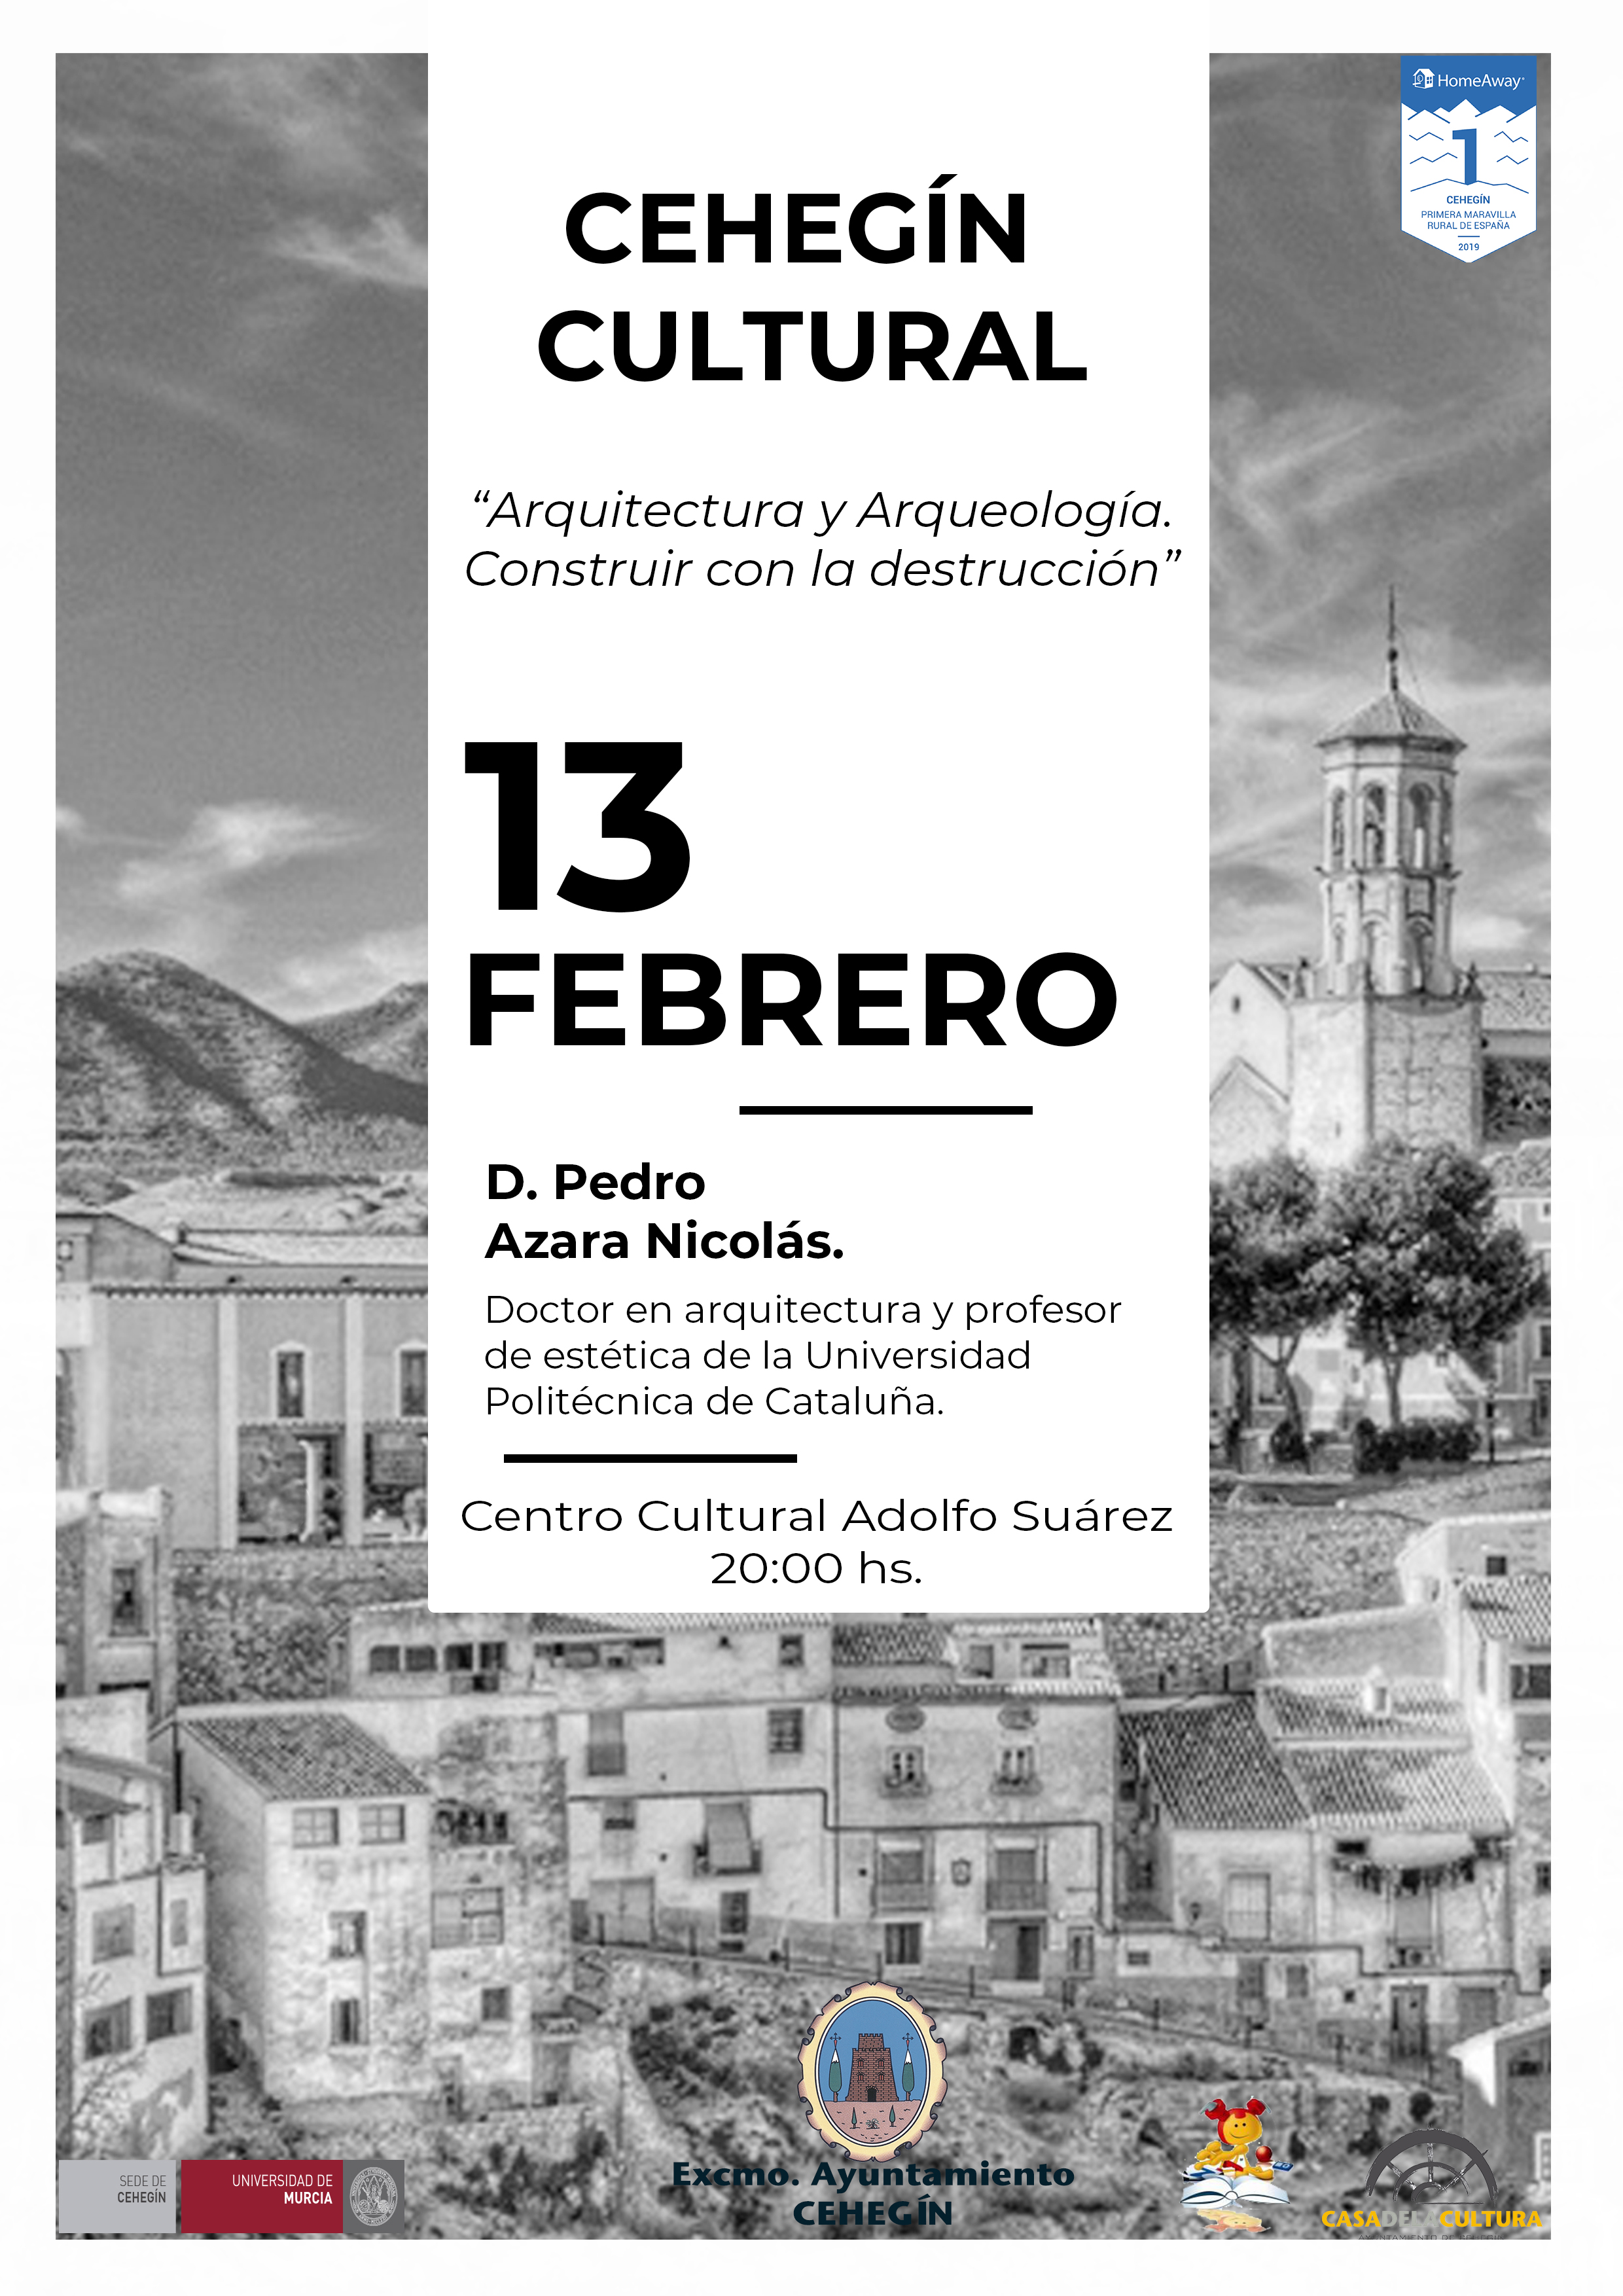 Conferencia a cargo del Doctor en Arquitectura y Profesor de Estética en la Universidad Politécnica de Cataluña